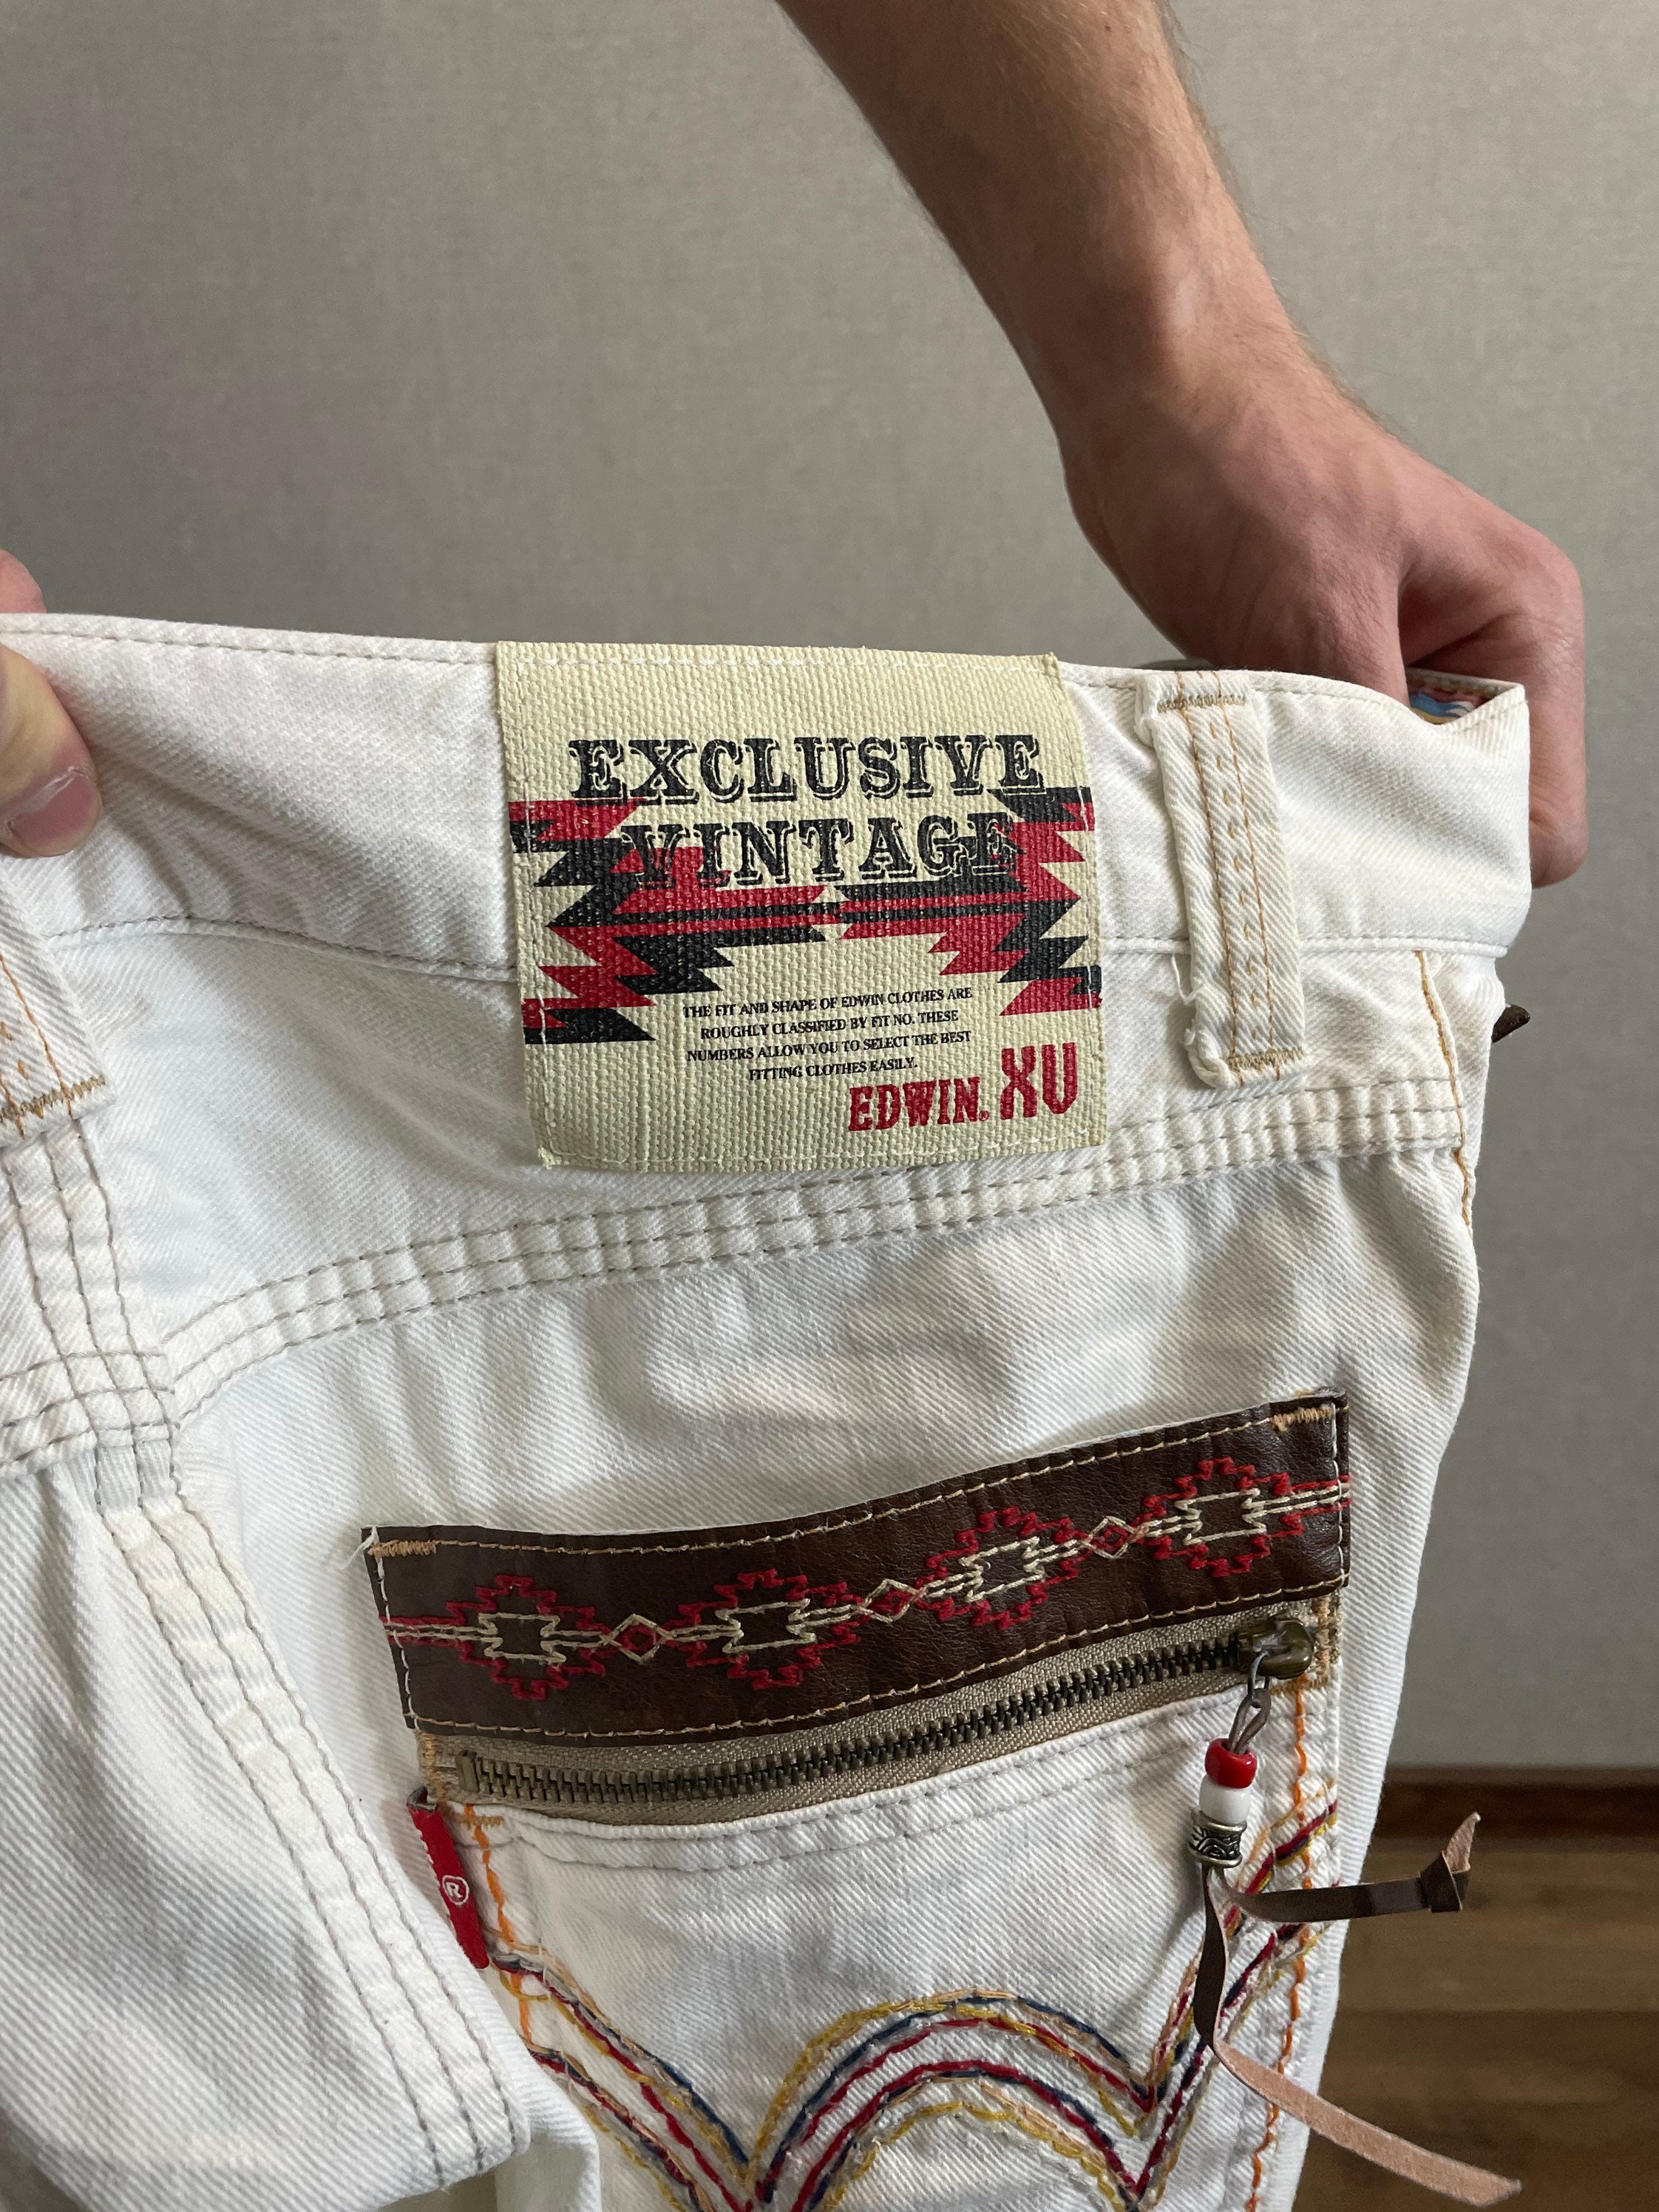 Edwin XU Exclusive Vintage White Denim Shorts Size 32 - Etsy